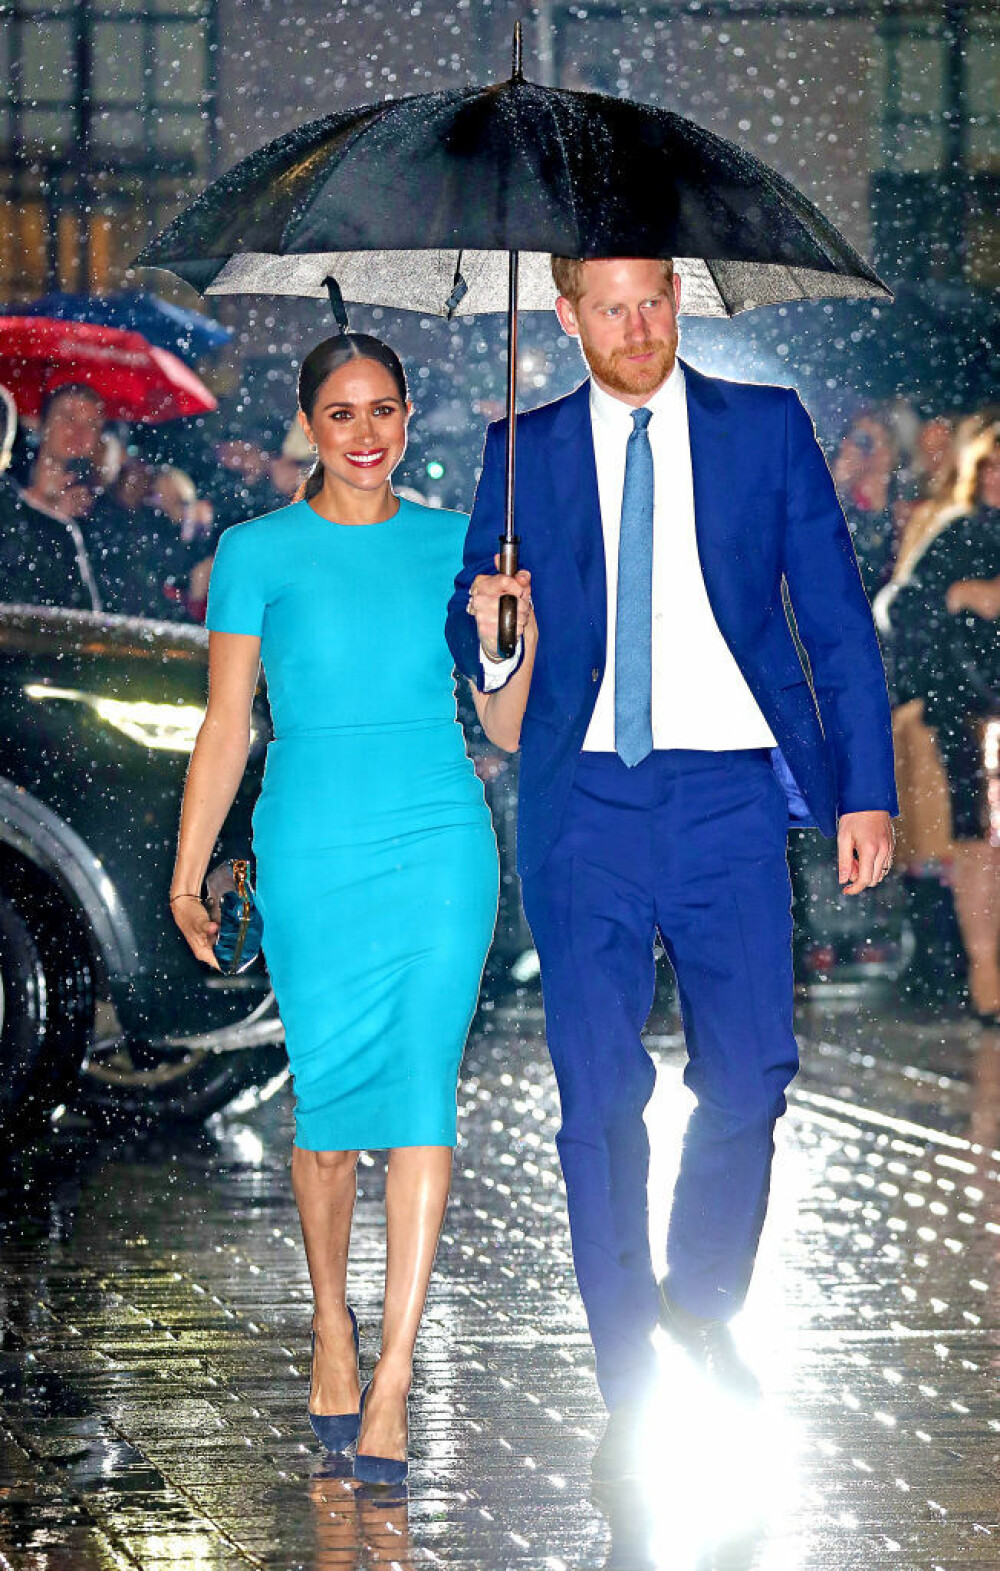 Imaginea cu Harry și Meghan în ploaie, sub umbrelă, a făcut înconjurul lumii - Imaginea 5